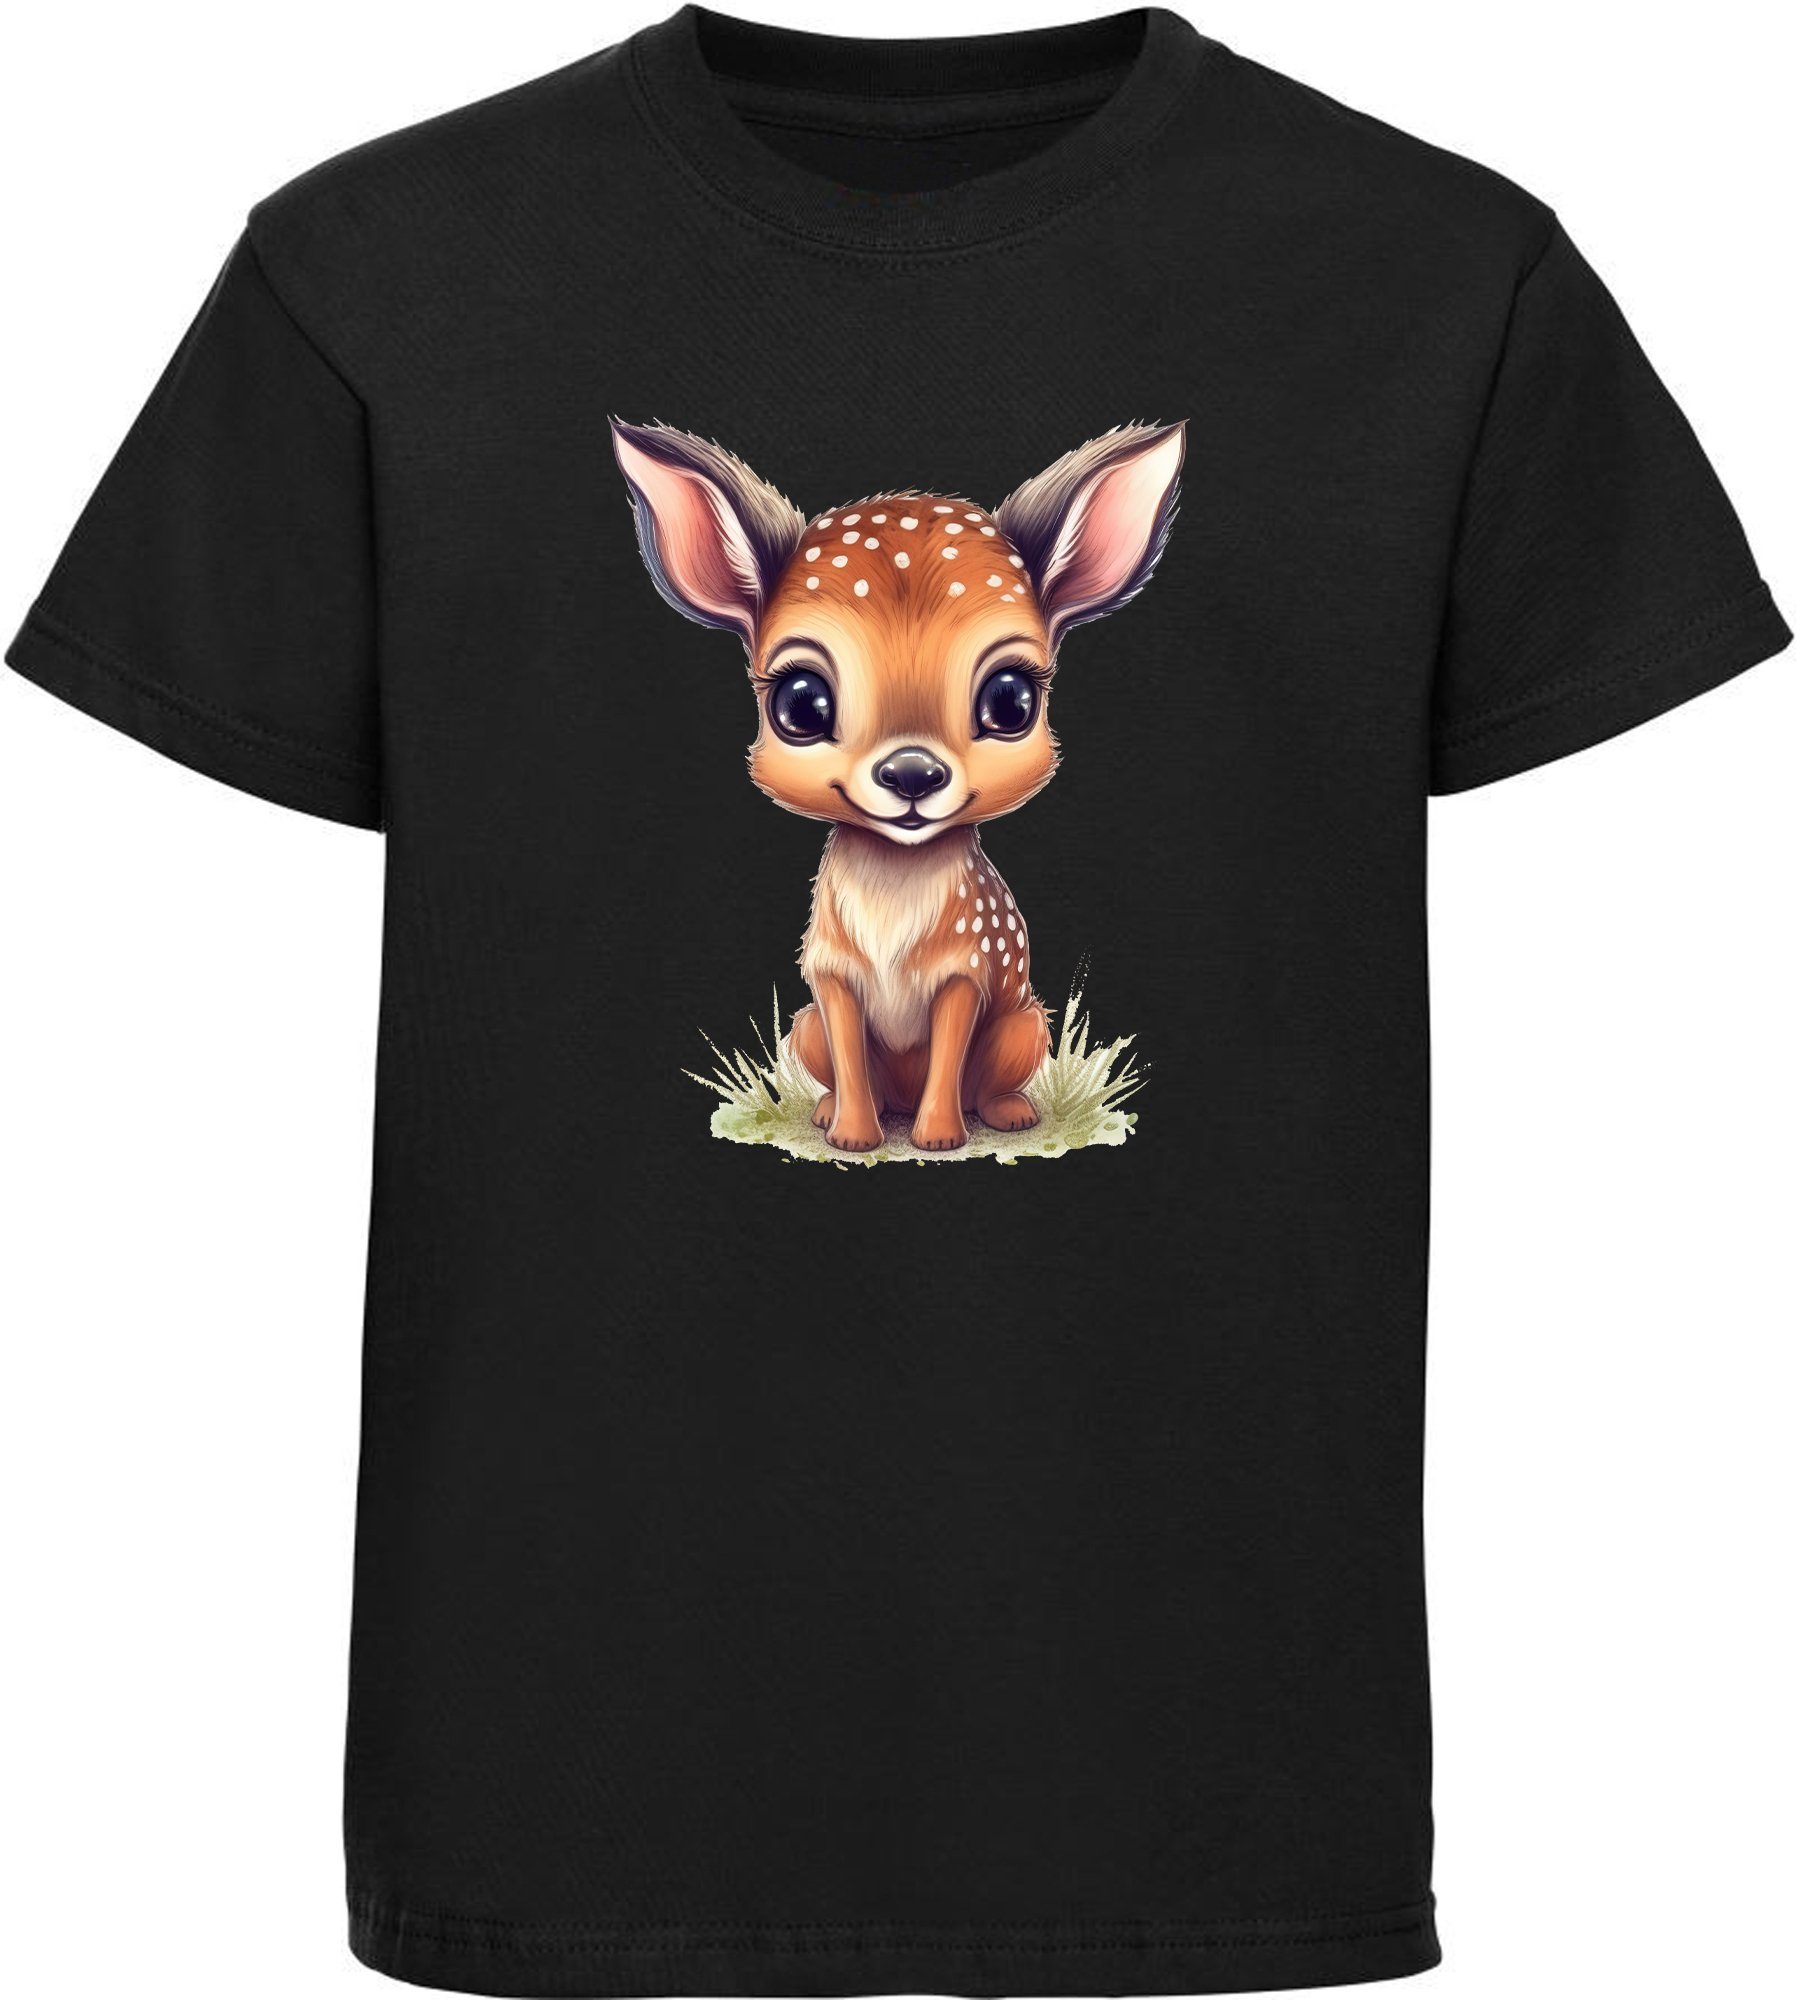 MyDesign24 T-Shirt Kinder Wildtier Print Shirt bedruckt - Baby Reh Rehkitz Baumwollshirt mit Aufdruck, i269 schwarz